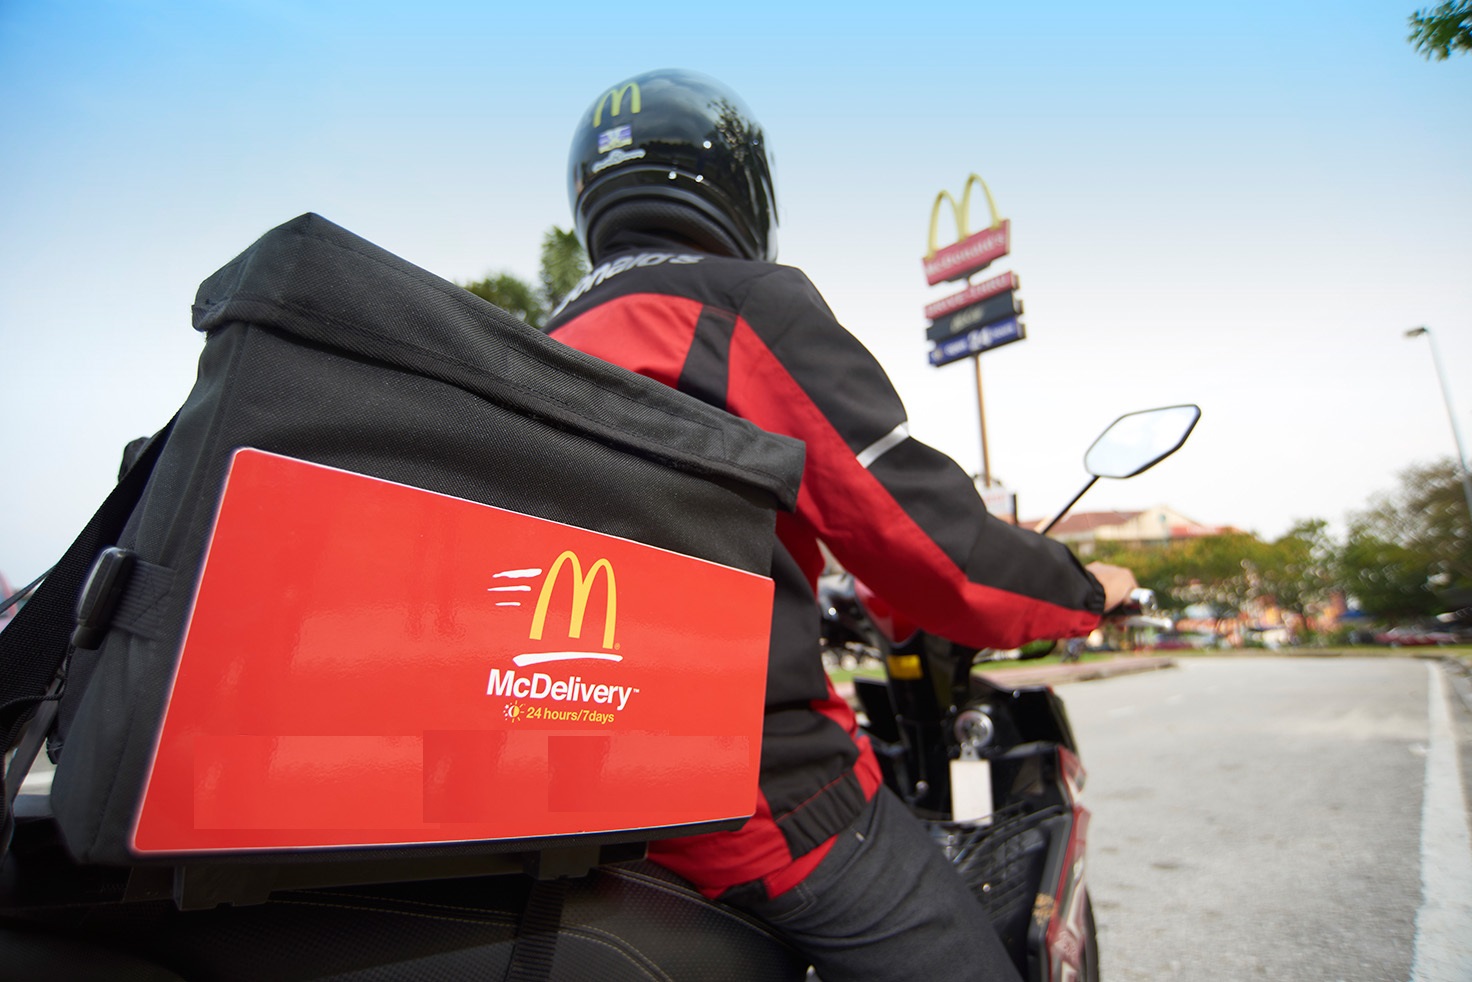 Hindistan'da McDonald's'n uygulamasndan 2,2 milyon kiinin bilgileri szdrld 